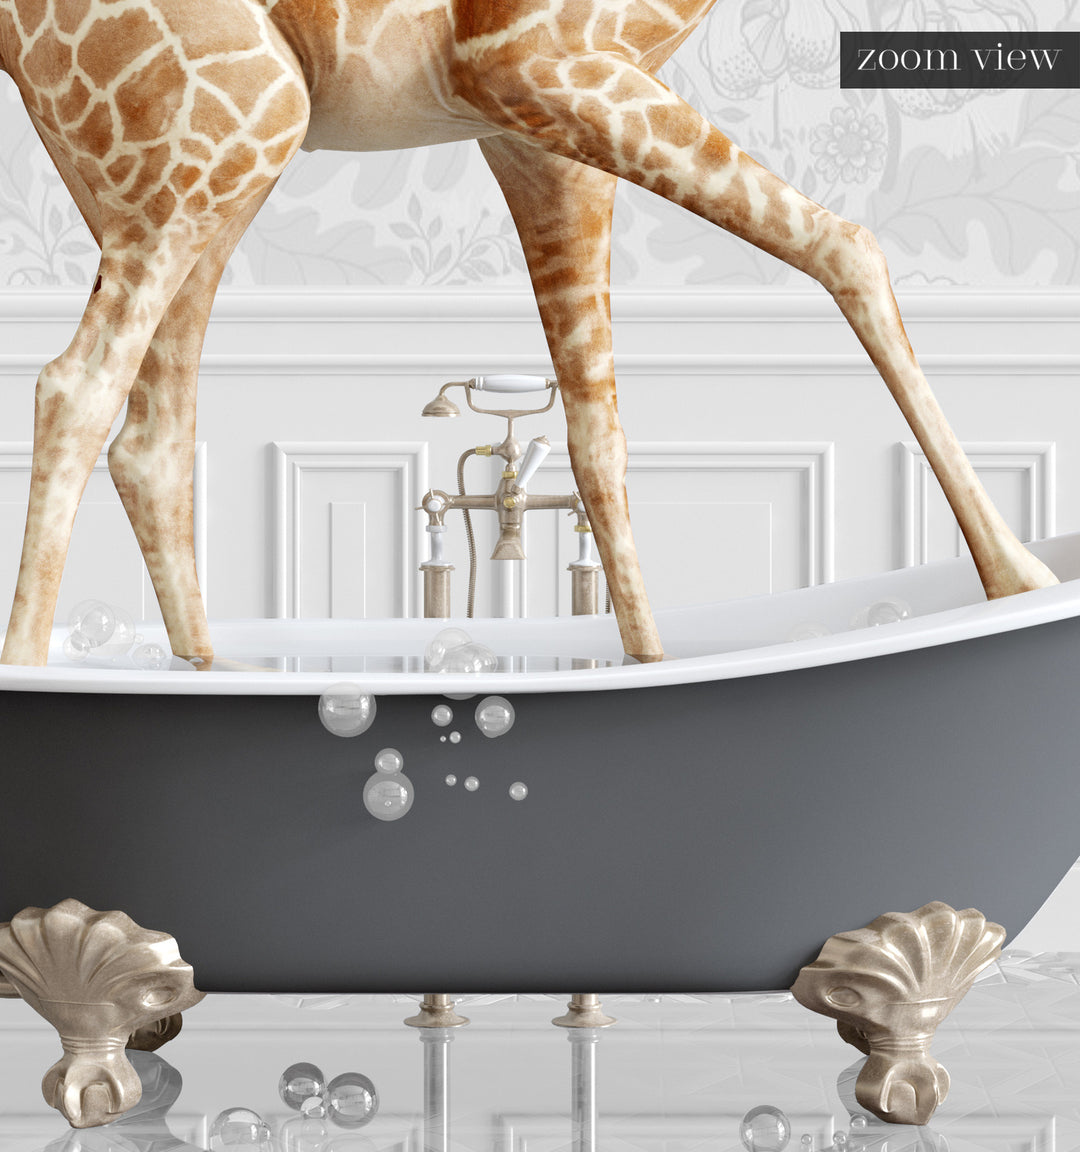 Giraffe in a Gray Bathtub